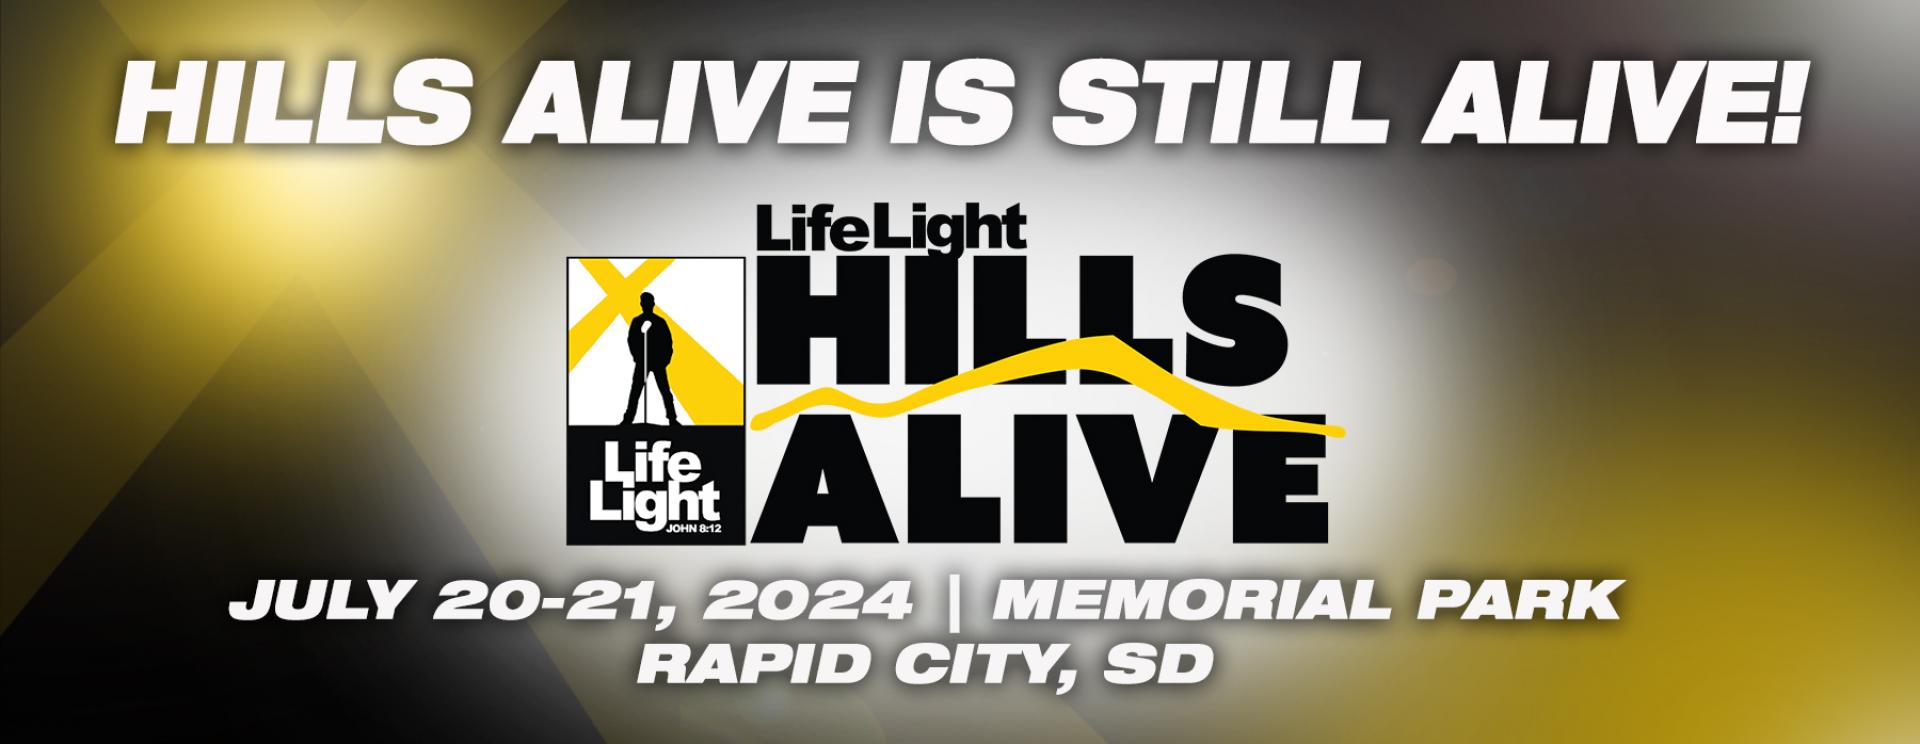 LifeLight Hills Alive Festival